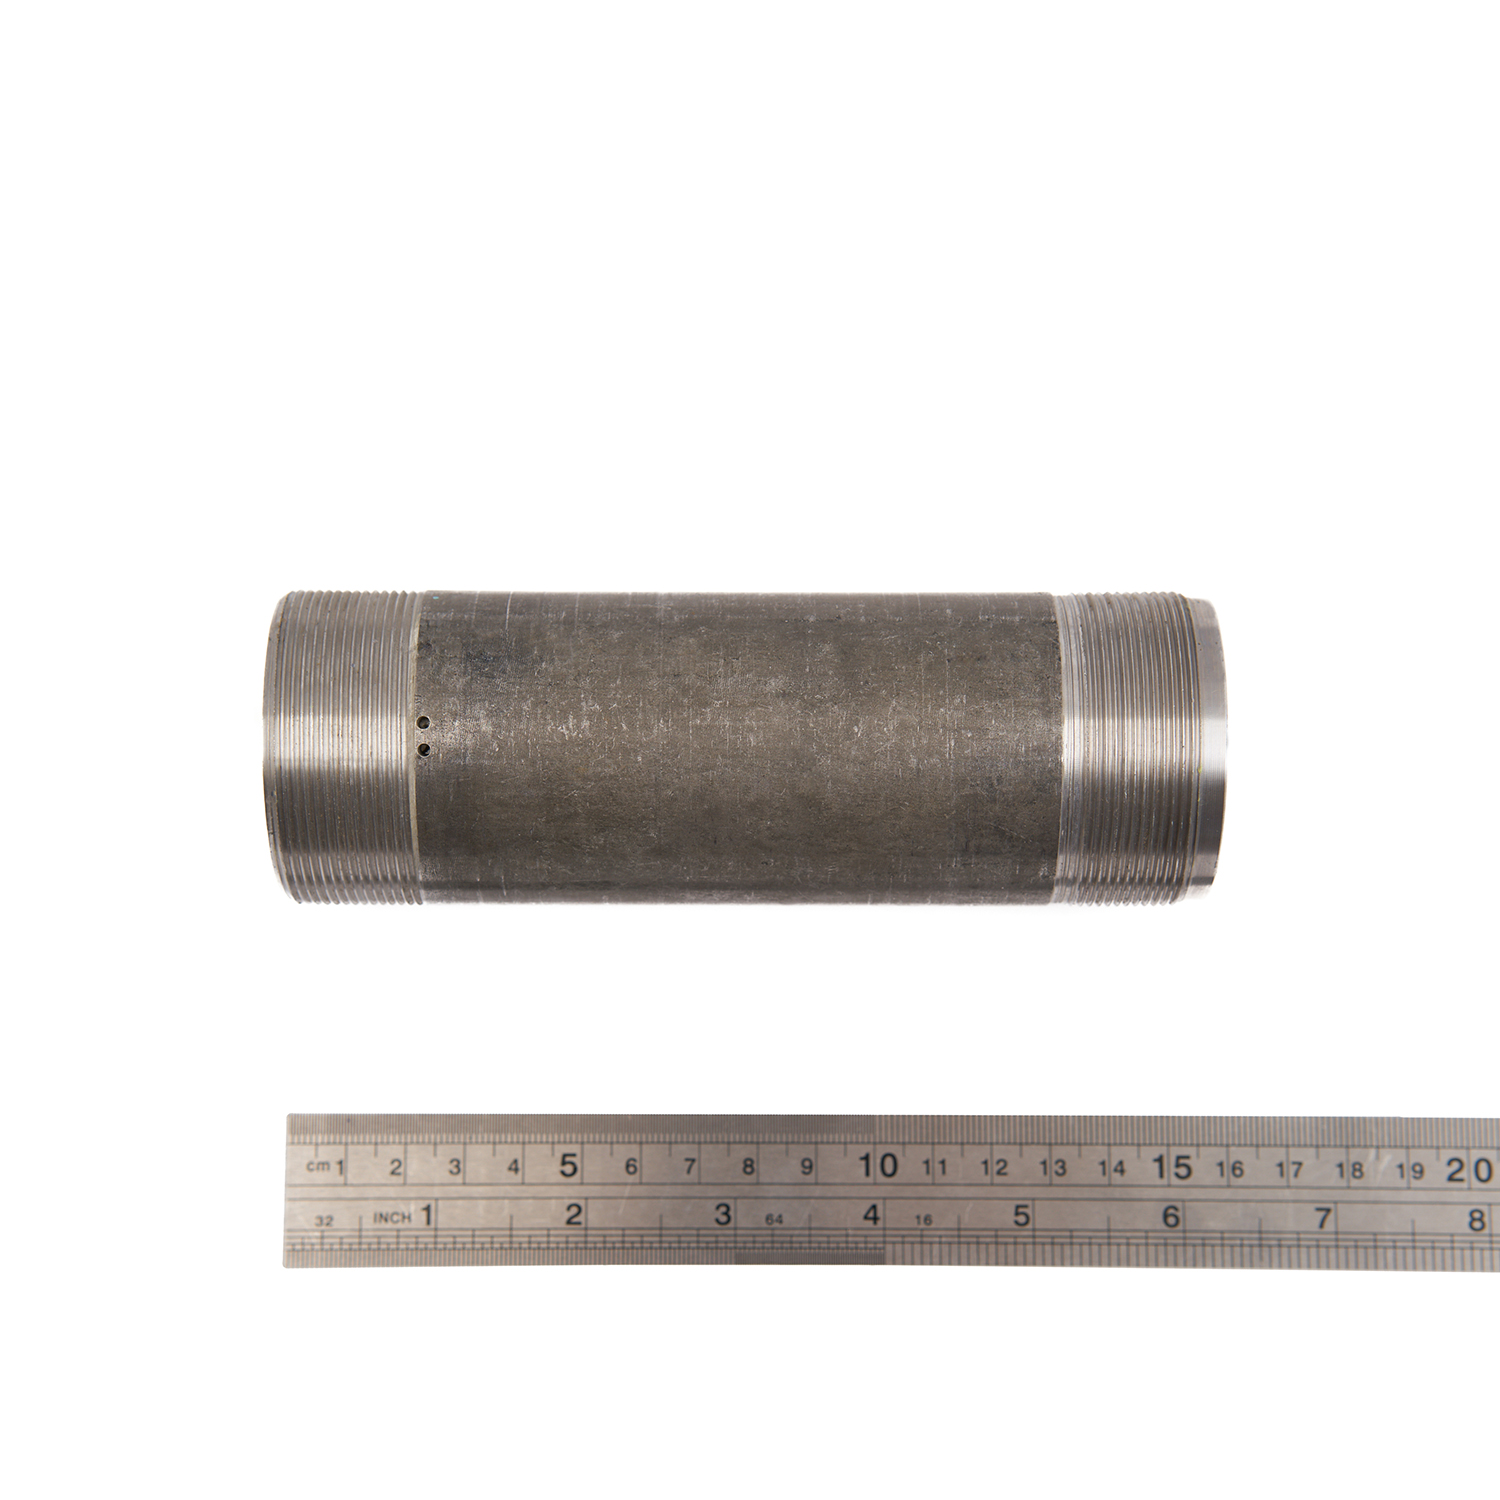 LYDBI-3T.4-15 Цилиндр силовой, d52 x 5 x151 мм